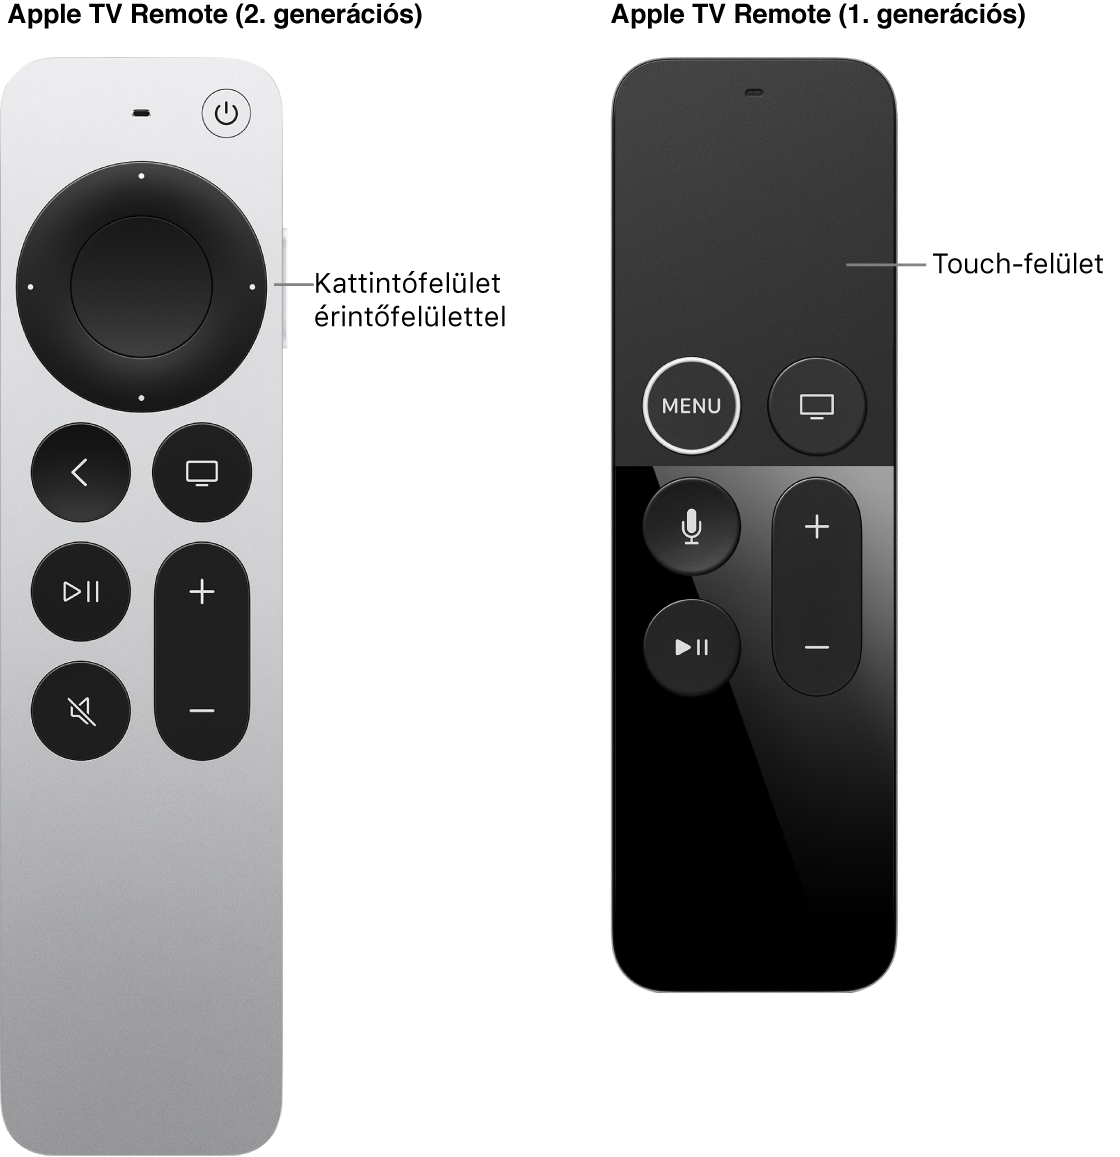 A kattintófelülettel ellátott Apple TV Remote (2. és 3. generációs) és az érintőfelülettel ellátott Apple TV Remote (1. generációs)